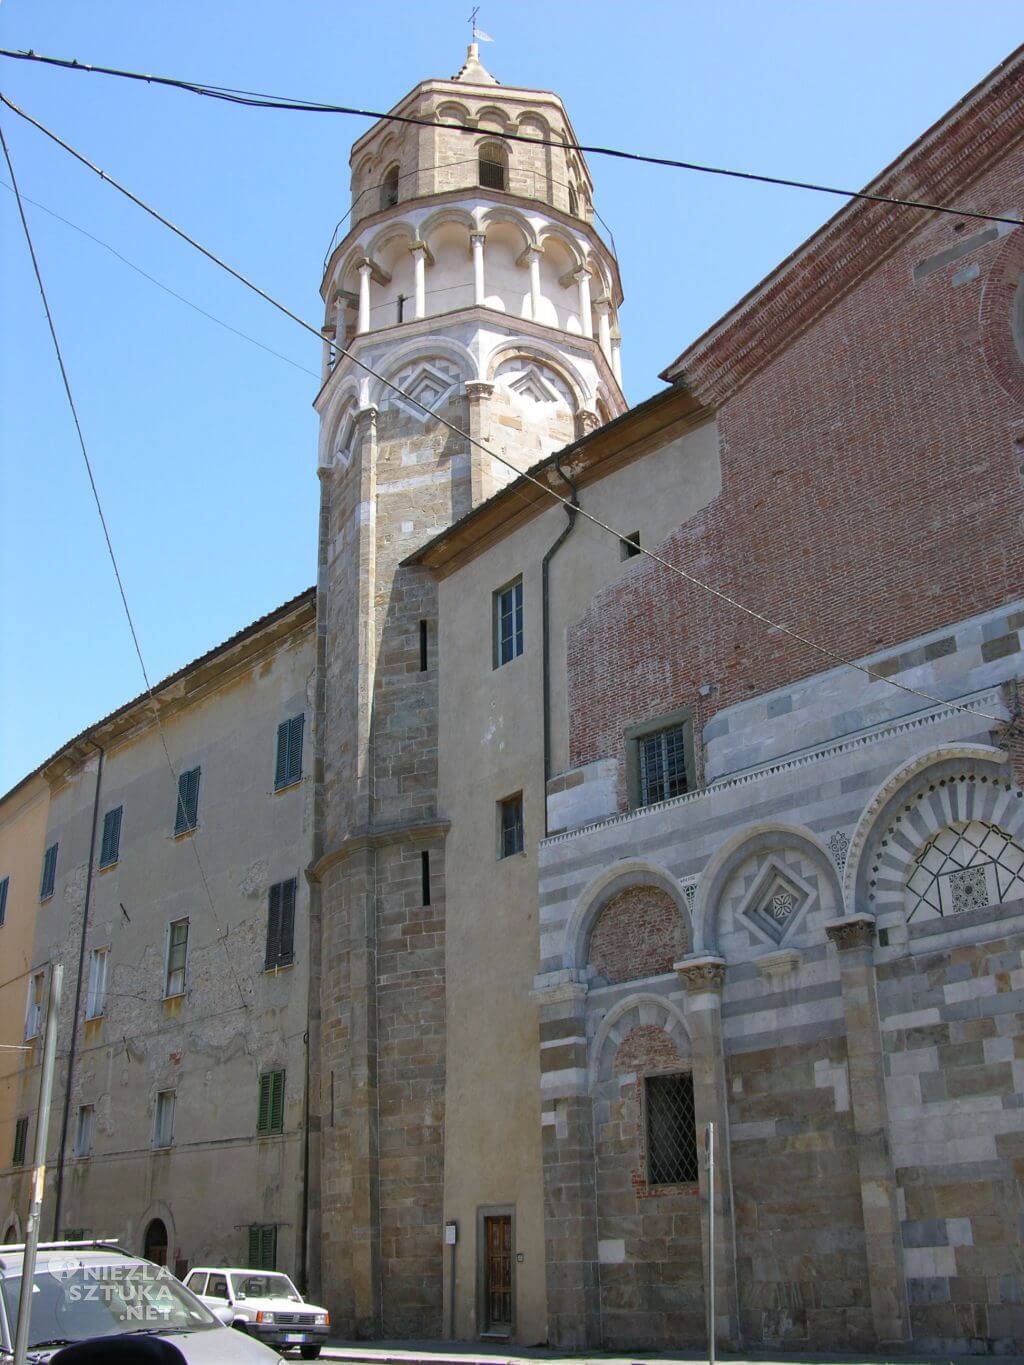 Piza, Dzwonnica kościoła San Nicola, niezła sztuka